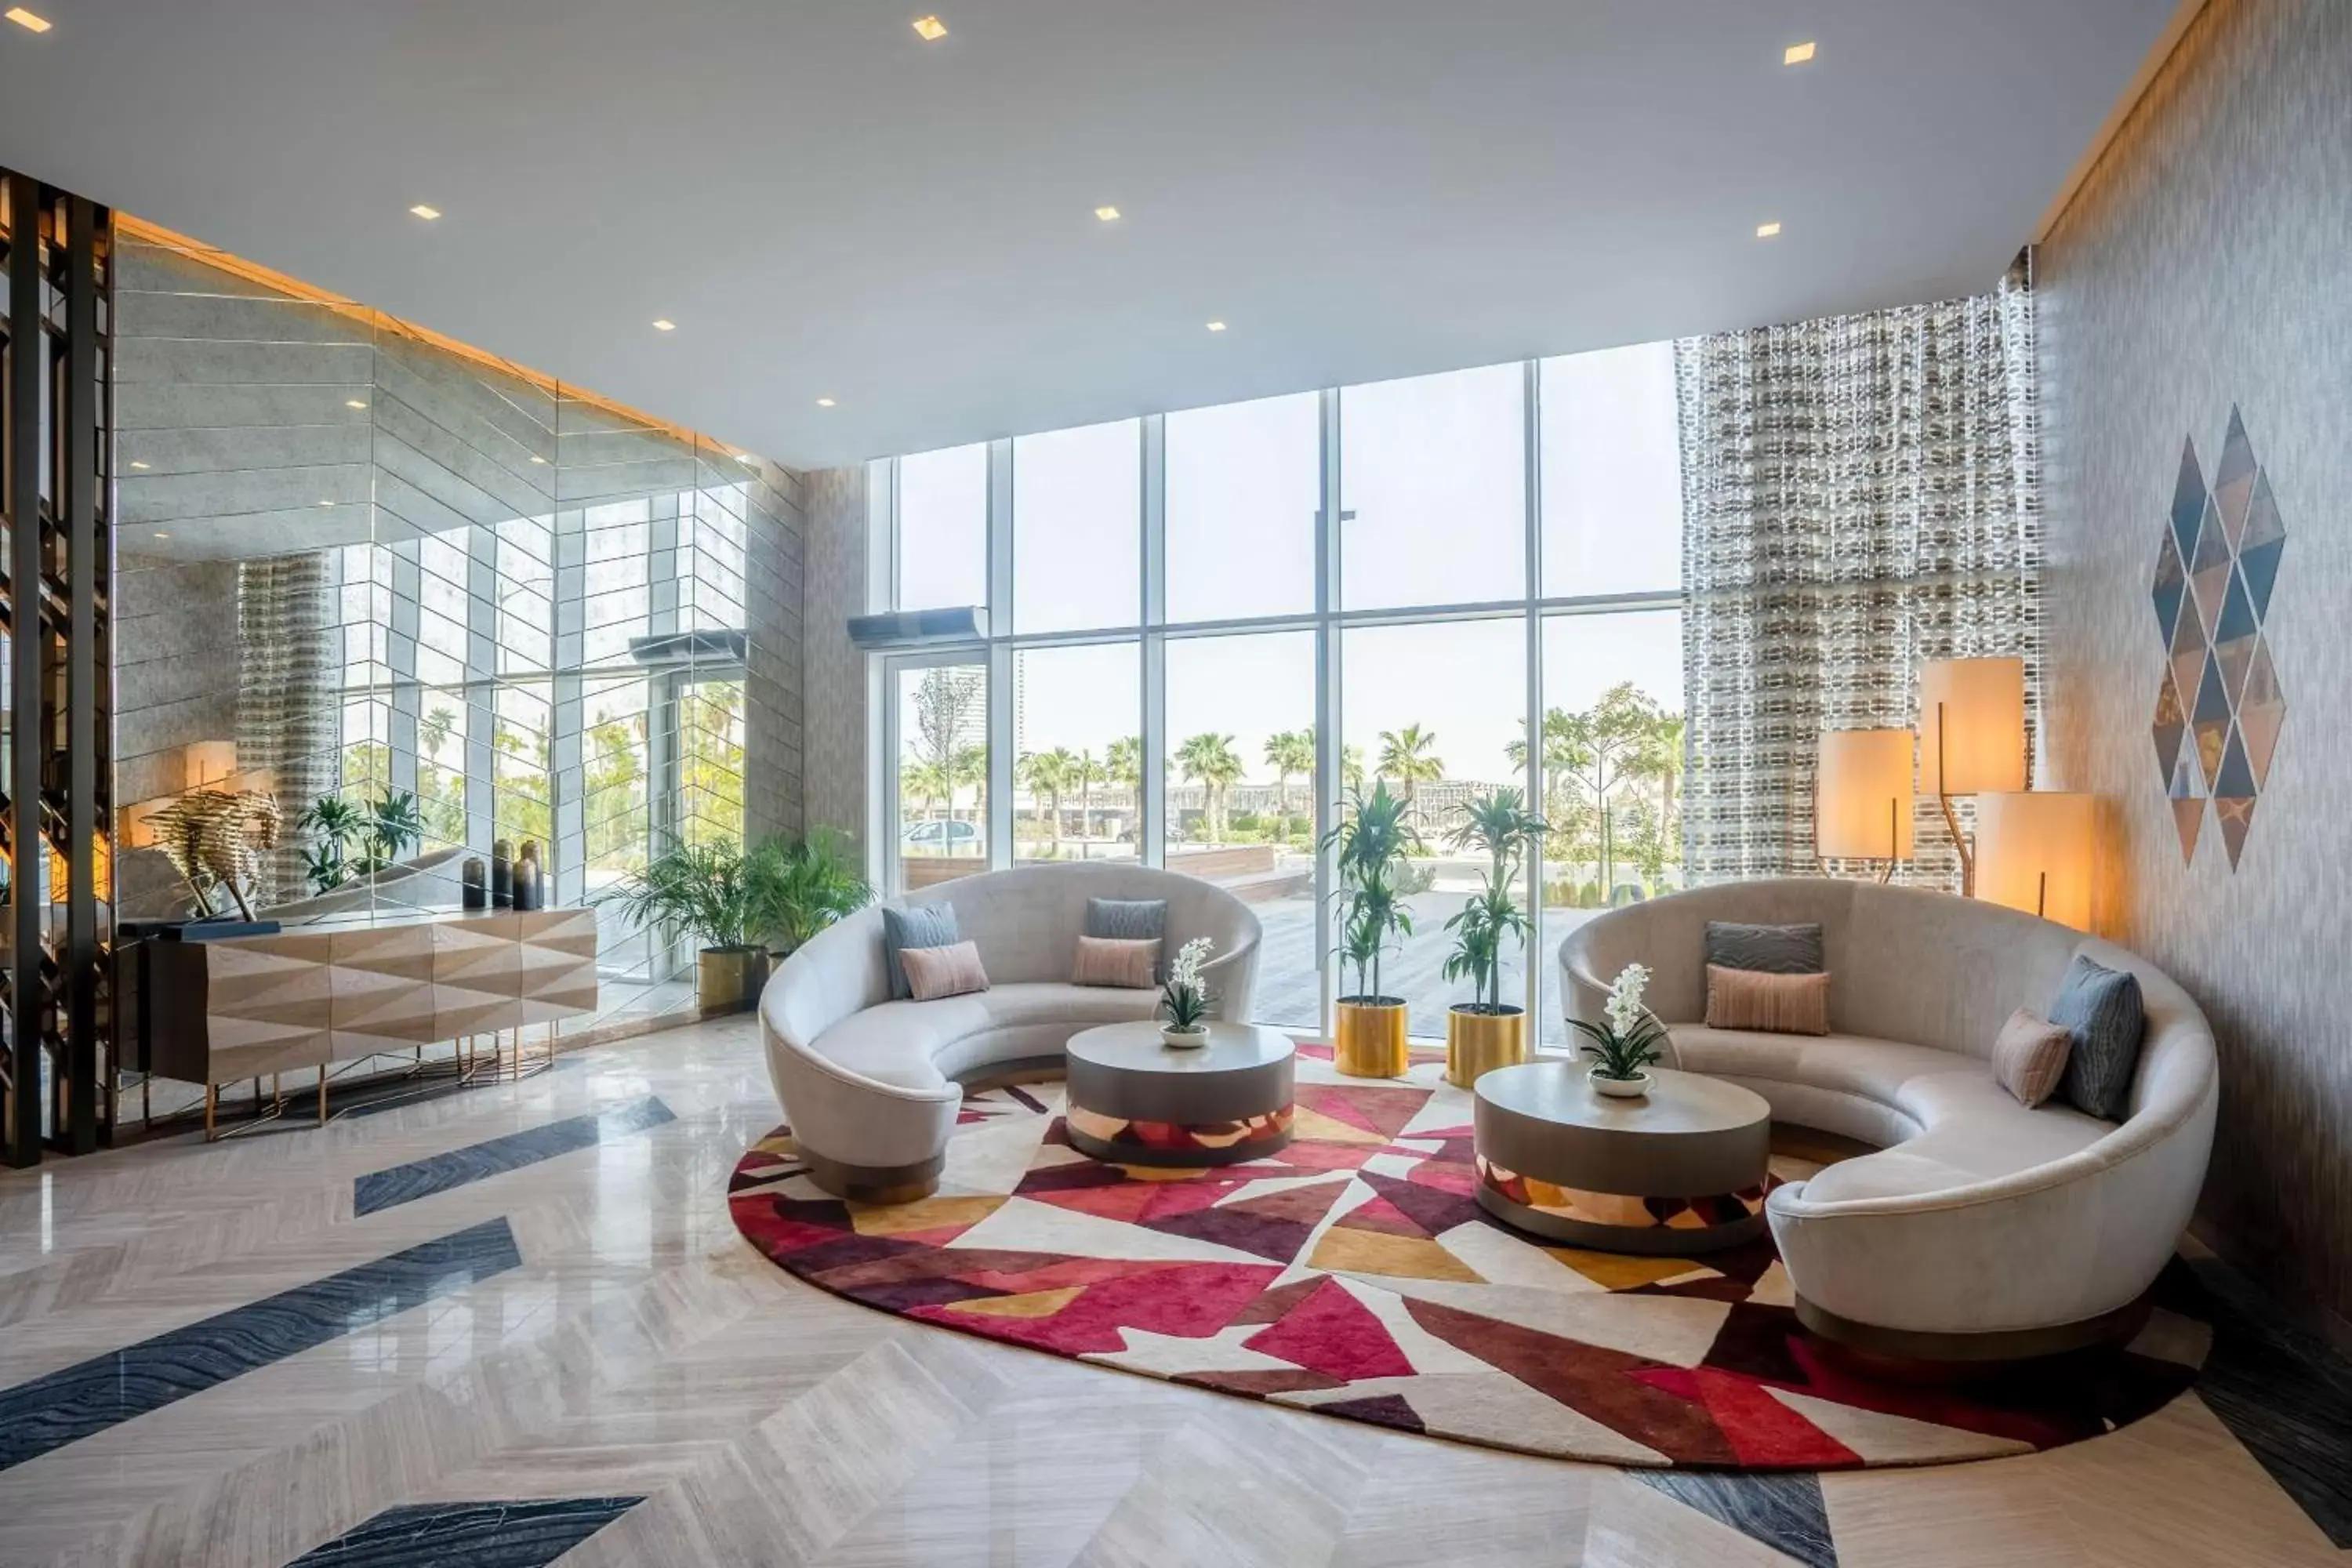 Lobby or reception in Radisson Dubai Damac Hills